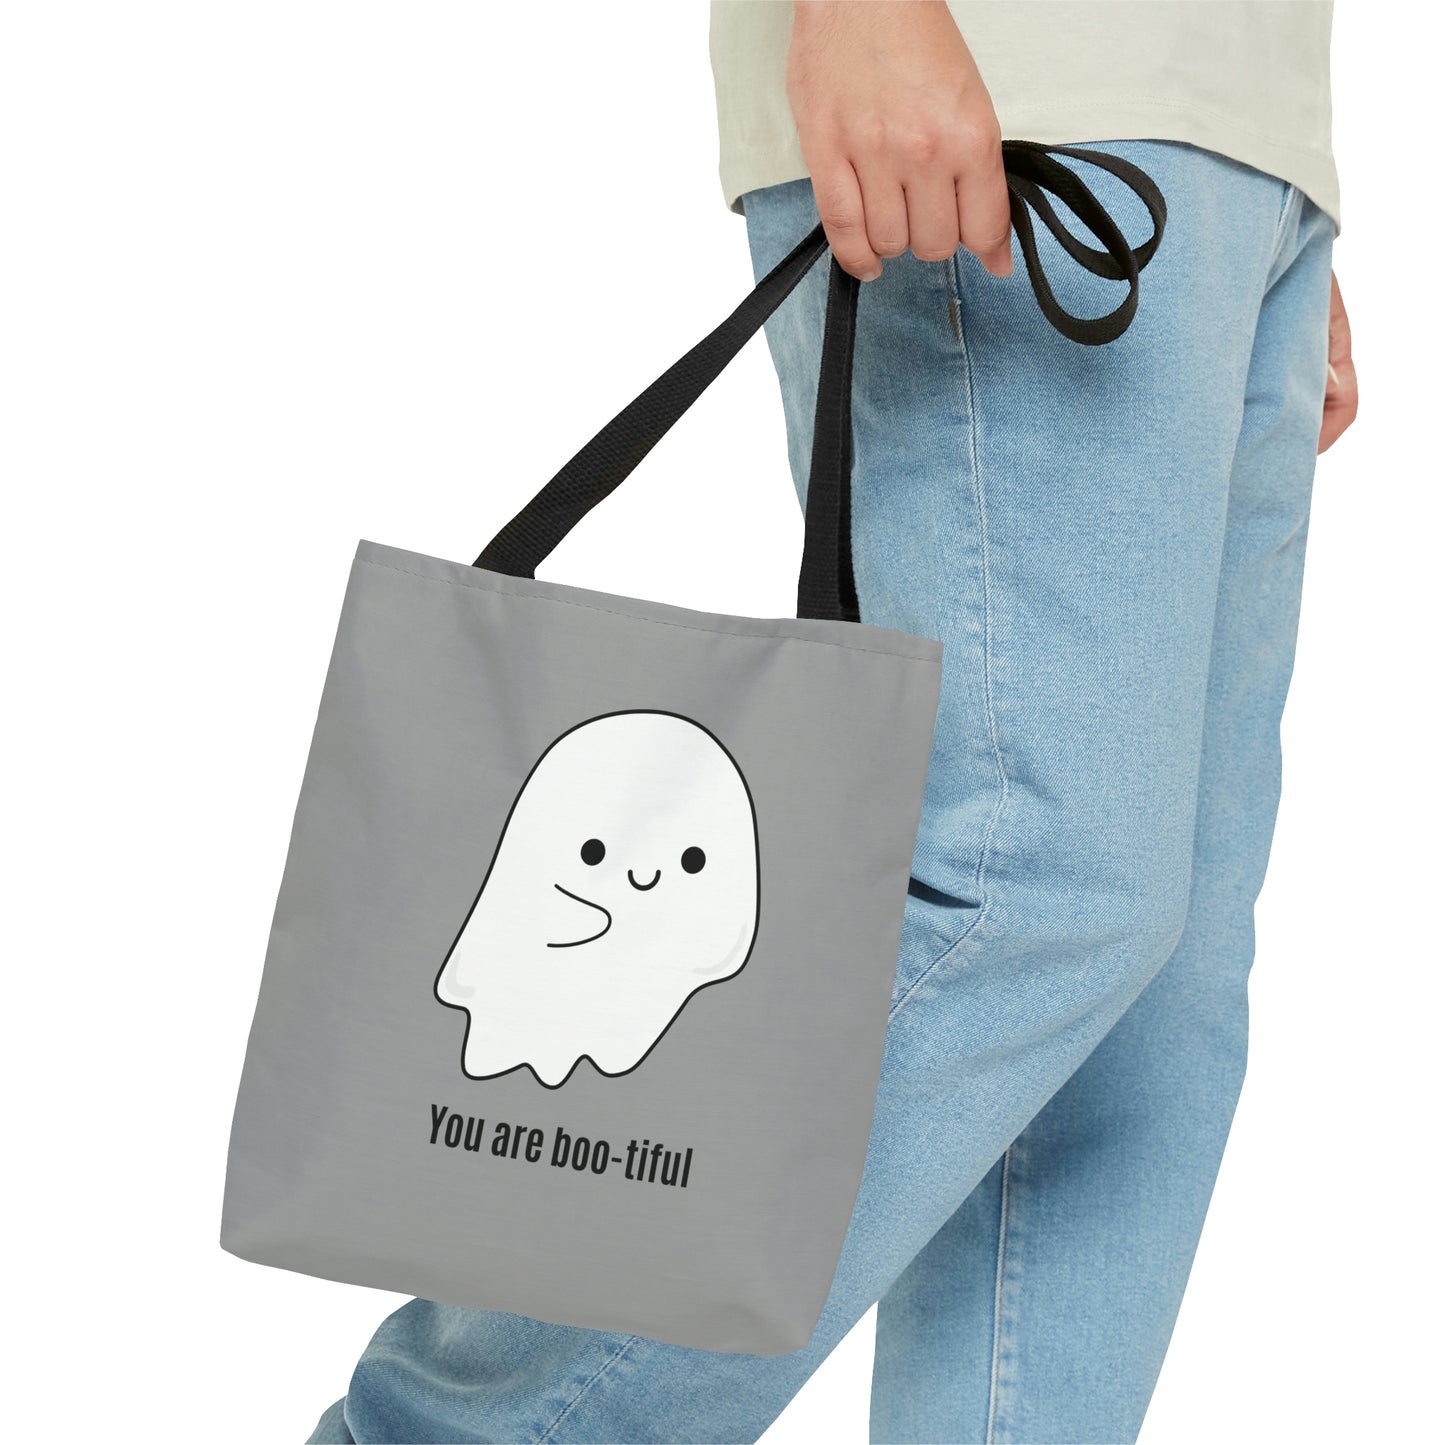 You Are Boo-tiful Tote Bag